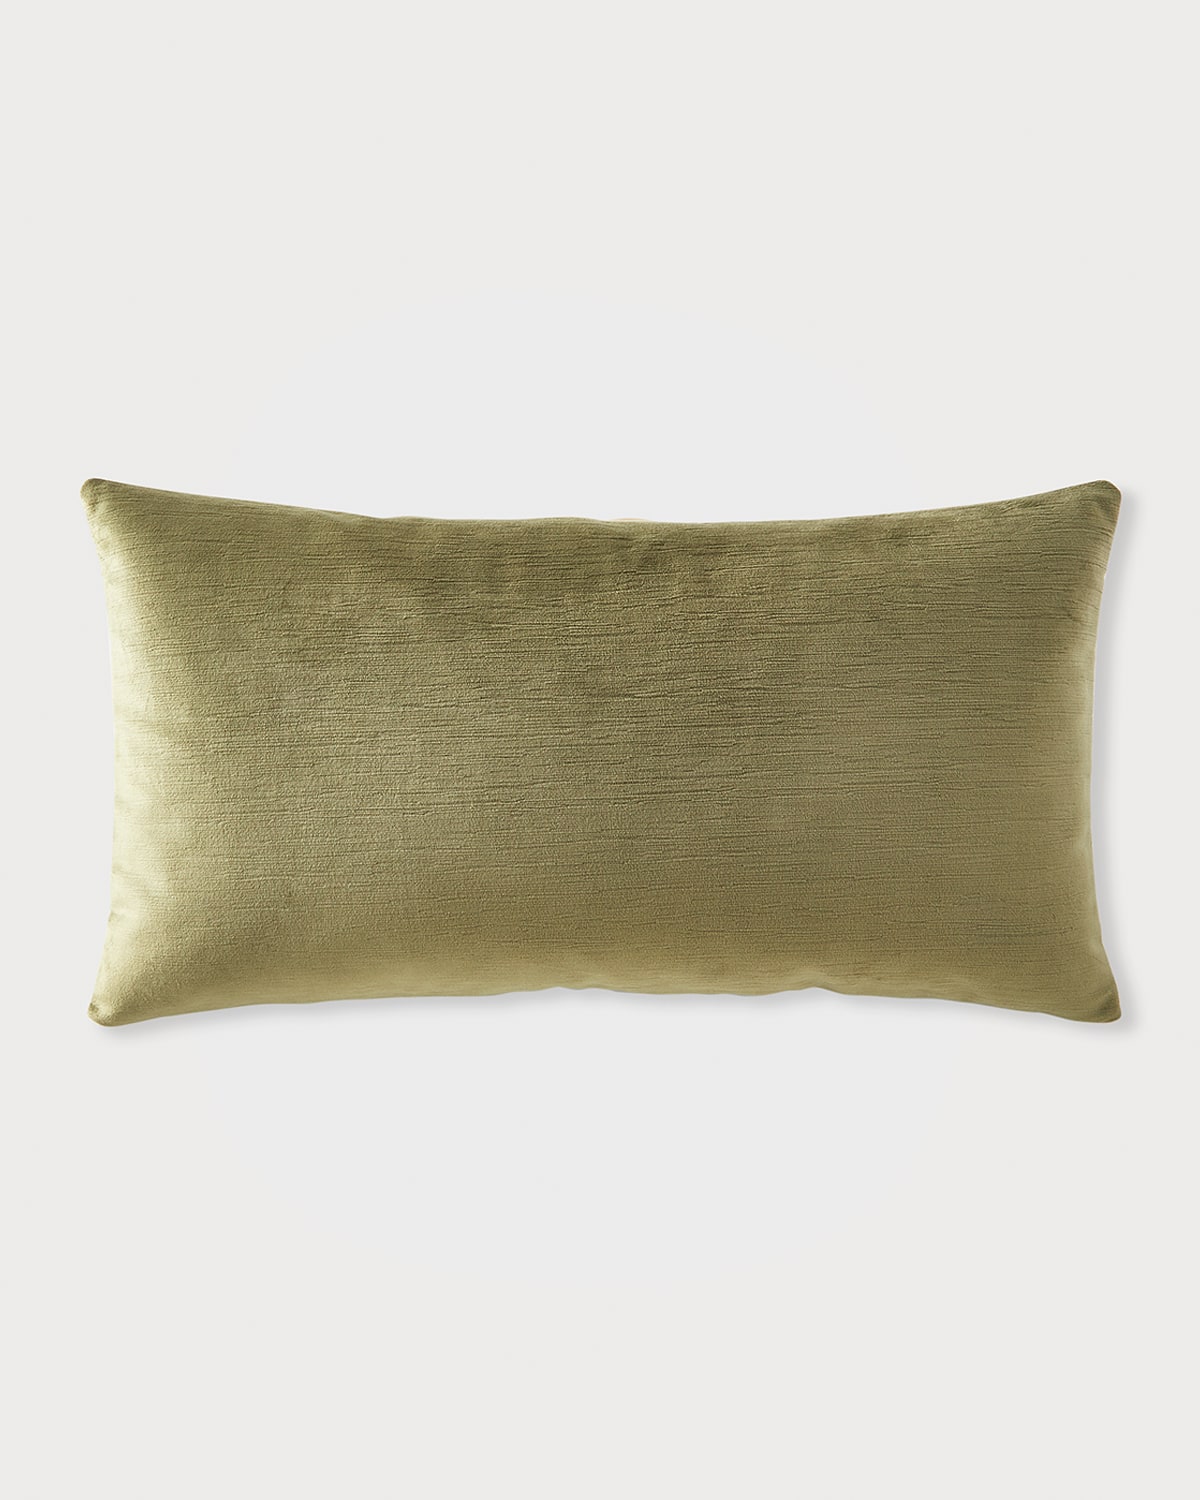 Brussels Velvet Lumbar Pillow, 13x24"